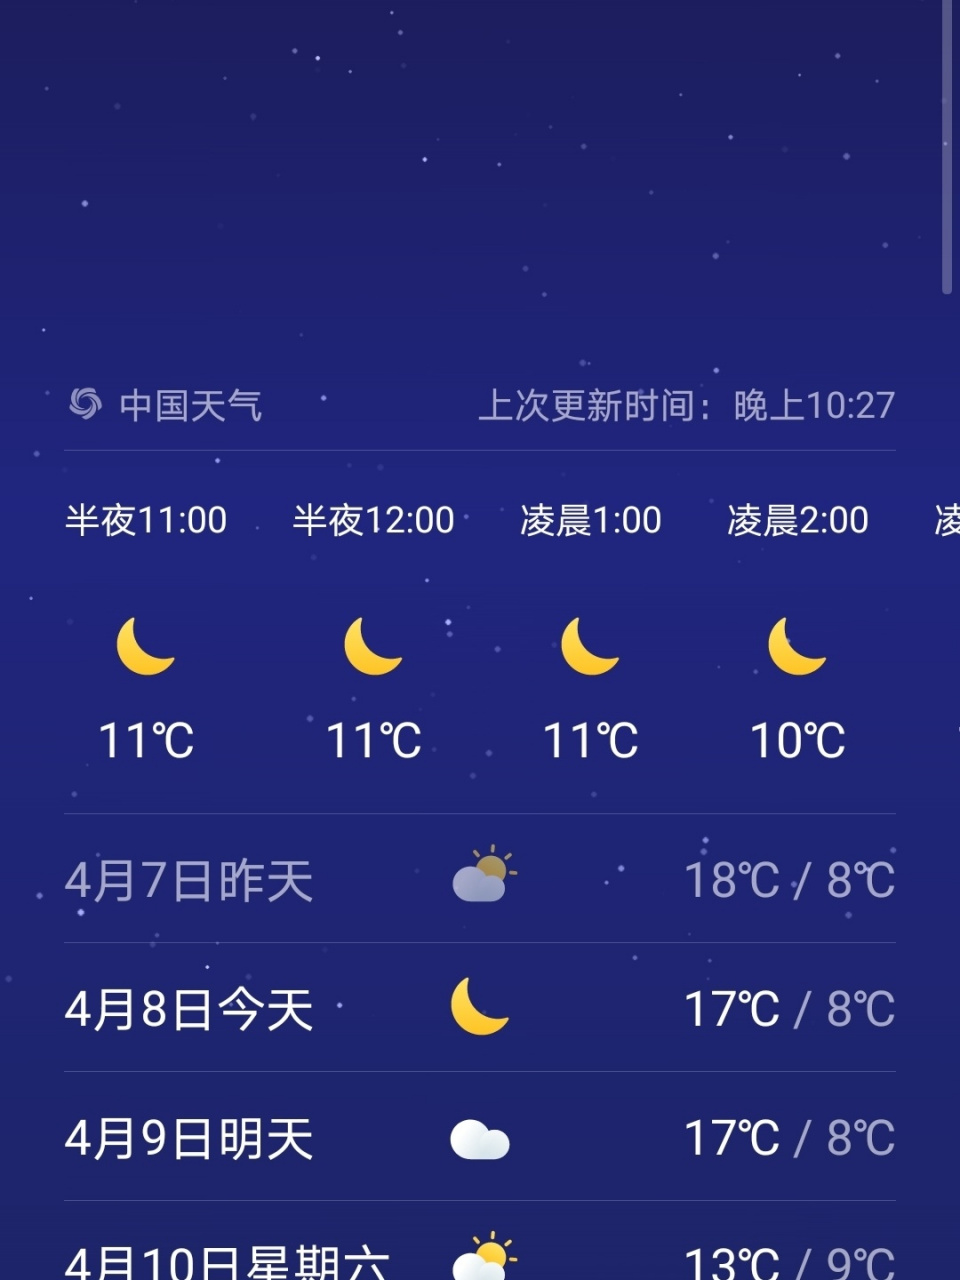 在线求问晋城天气 山西晋城的盆友们,现在当地的天气如何?温度如何?